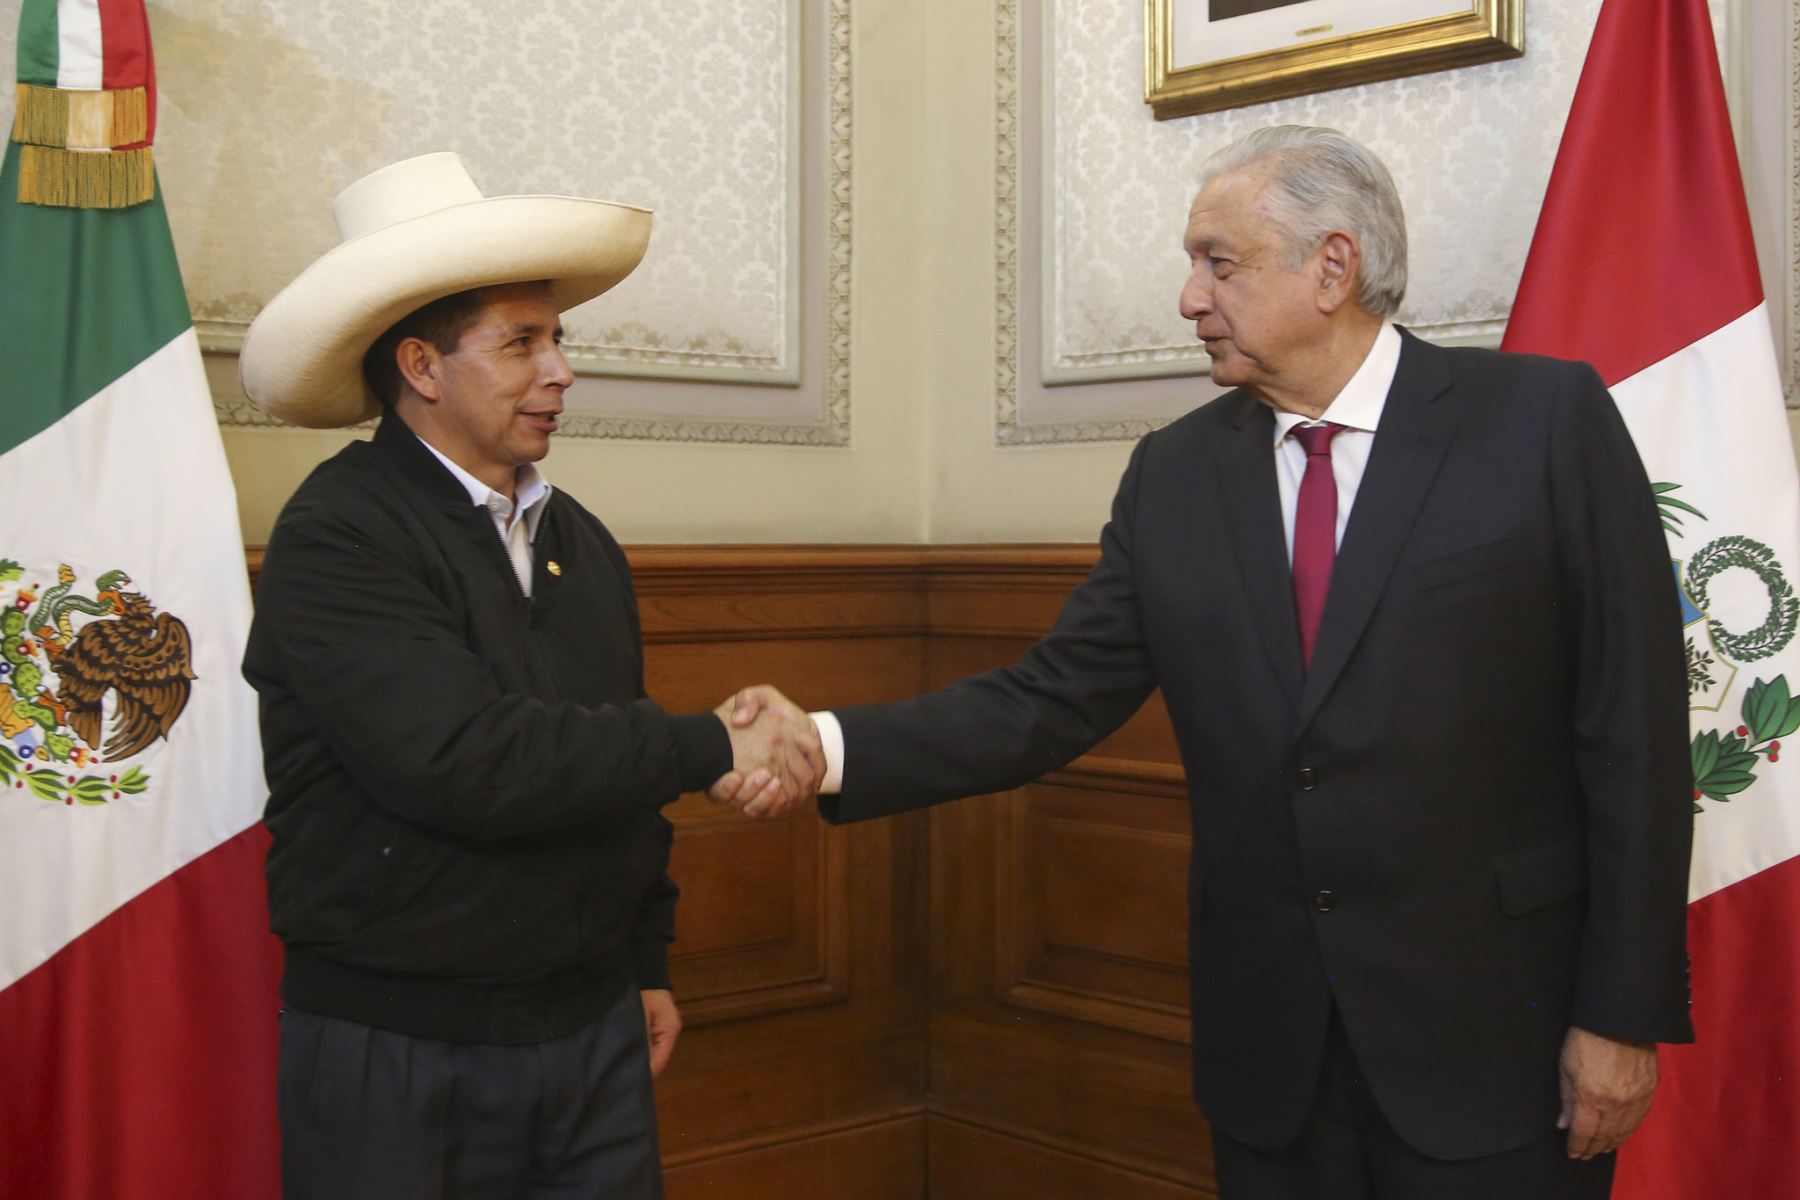 El presidente de la República, Pedro Castillo, sostuvo una reunión con su homólogo mexicano Manuel López Obrador. Foto: Prensa Presidencia